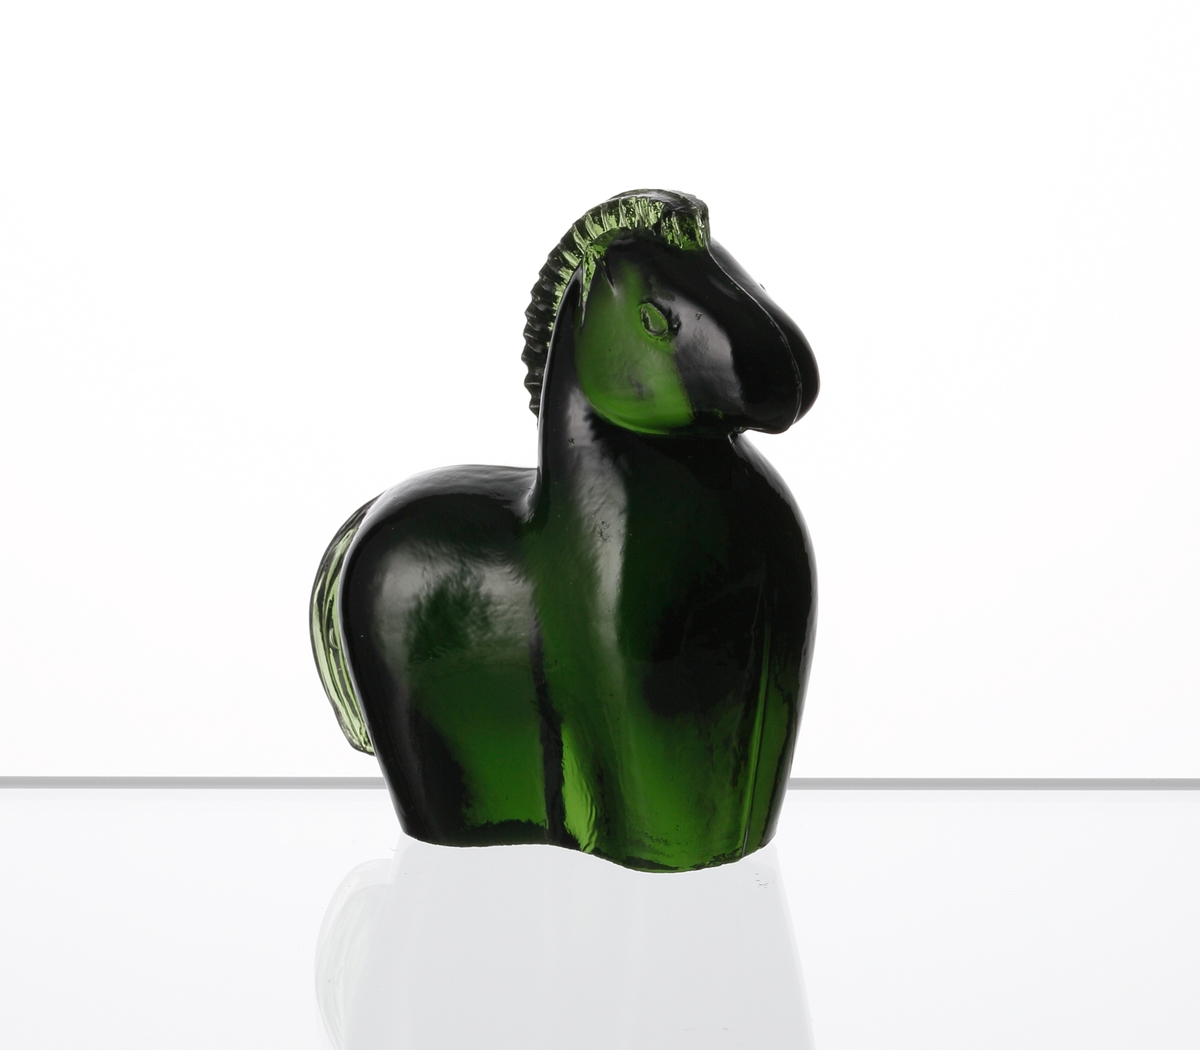 Formgiven av Kjell Blomberg. Mindre figuring i grönt glas, föreställande en häst.